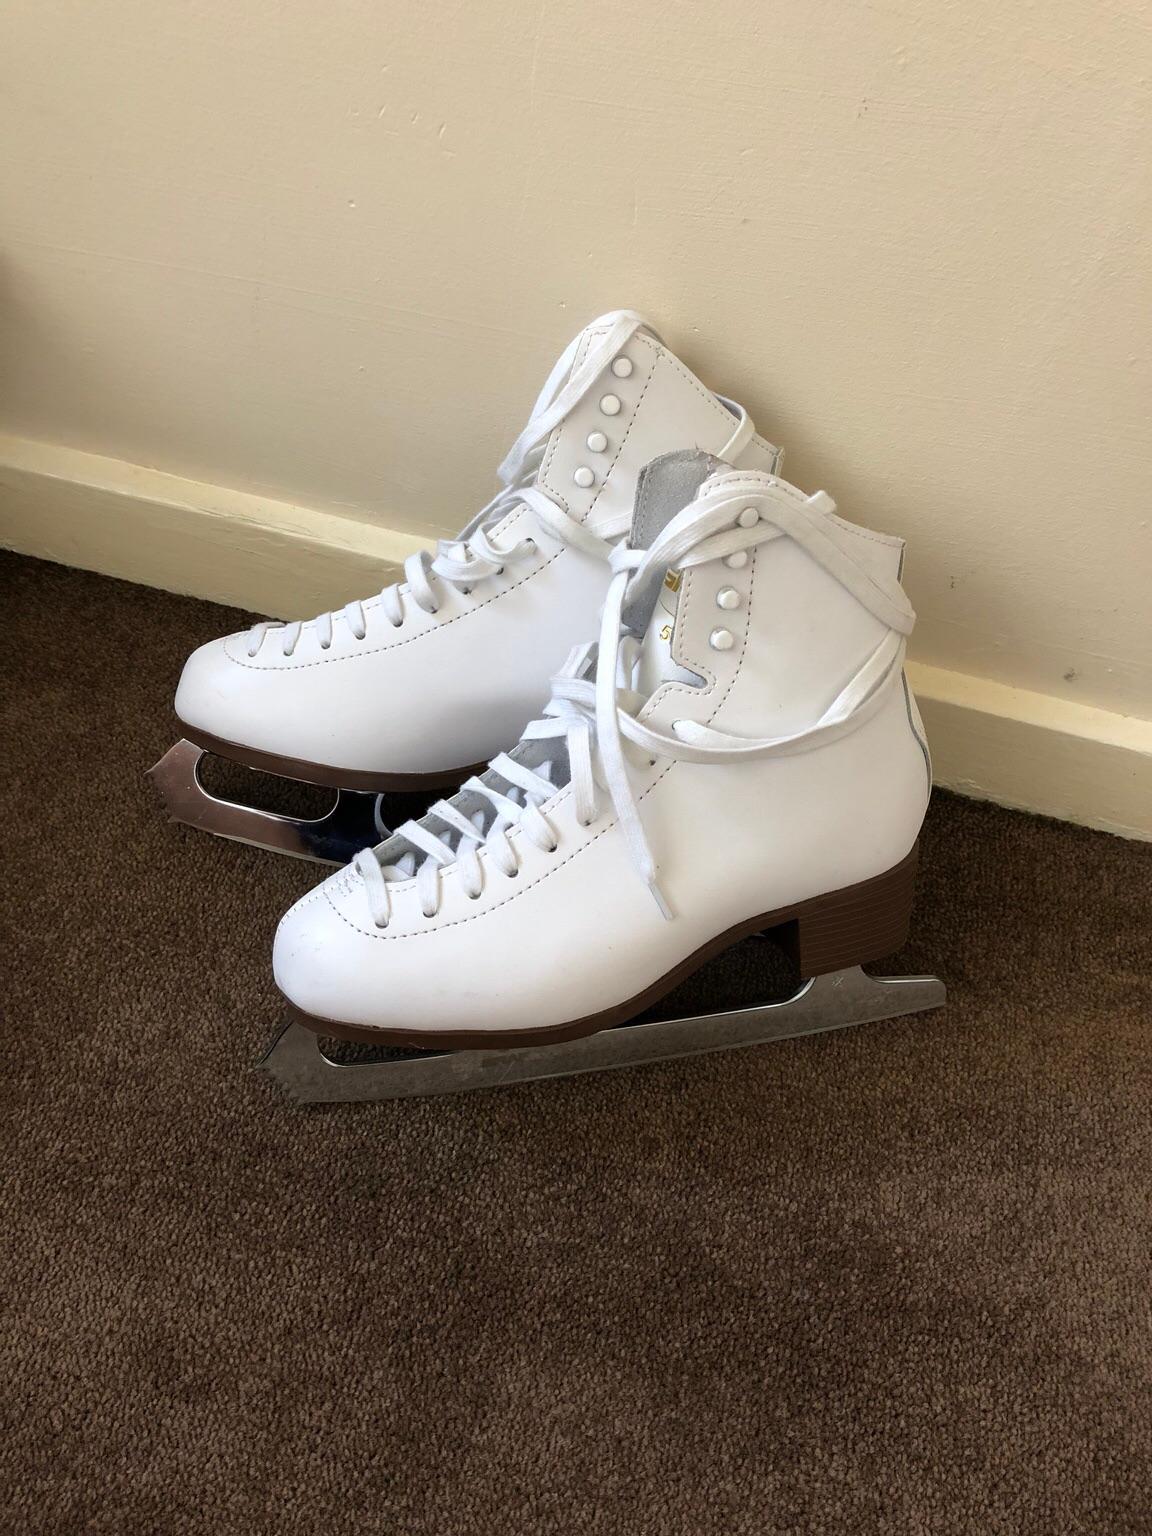 Graf 500 Ice Skates White UK 6